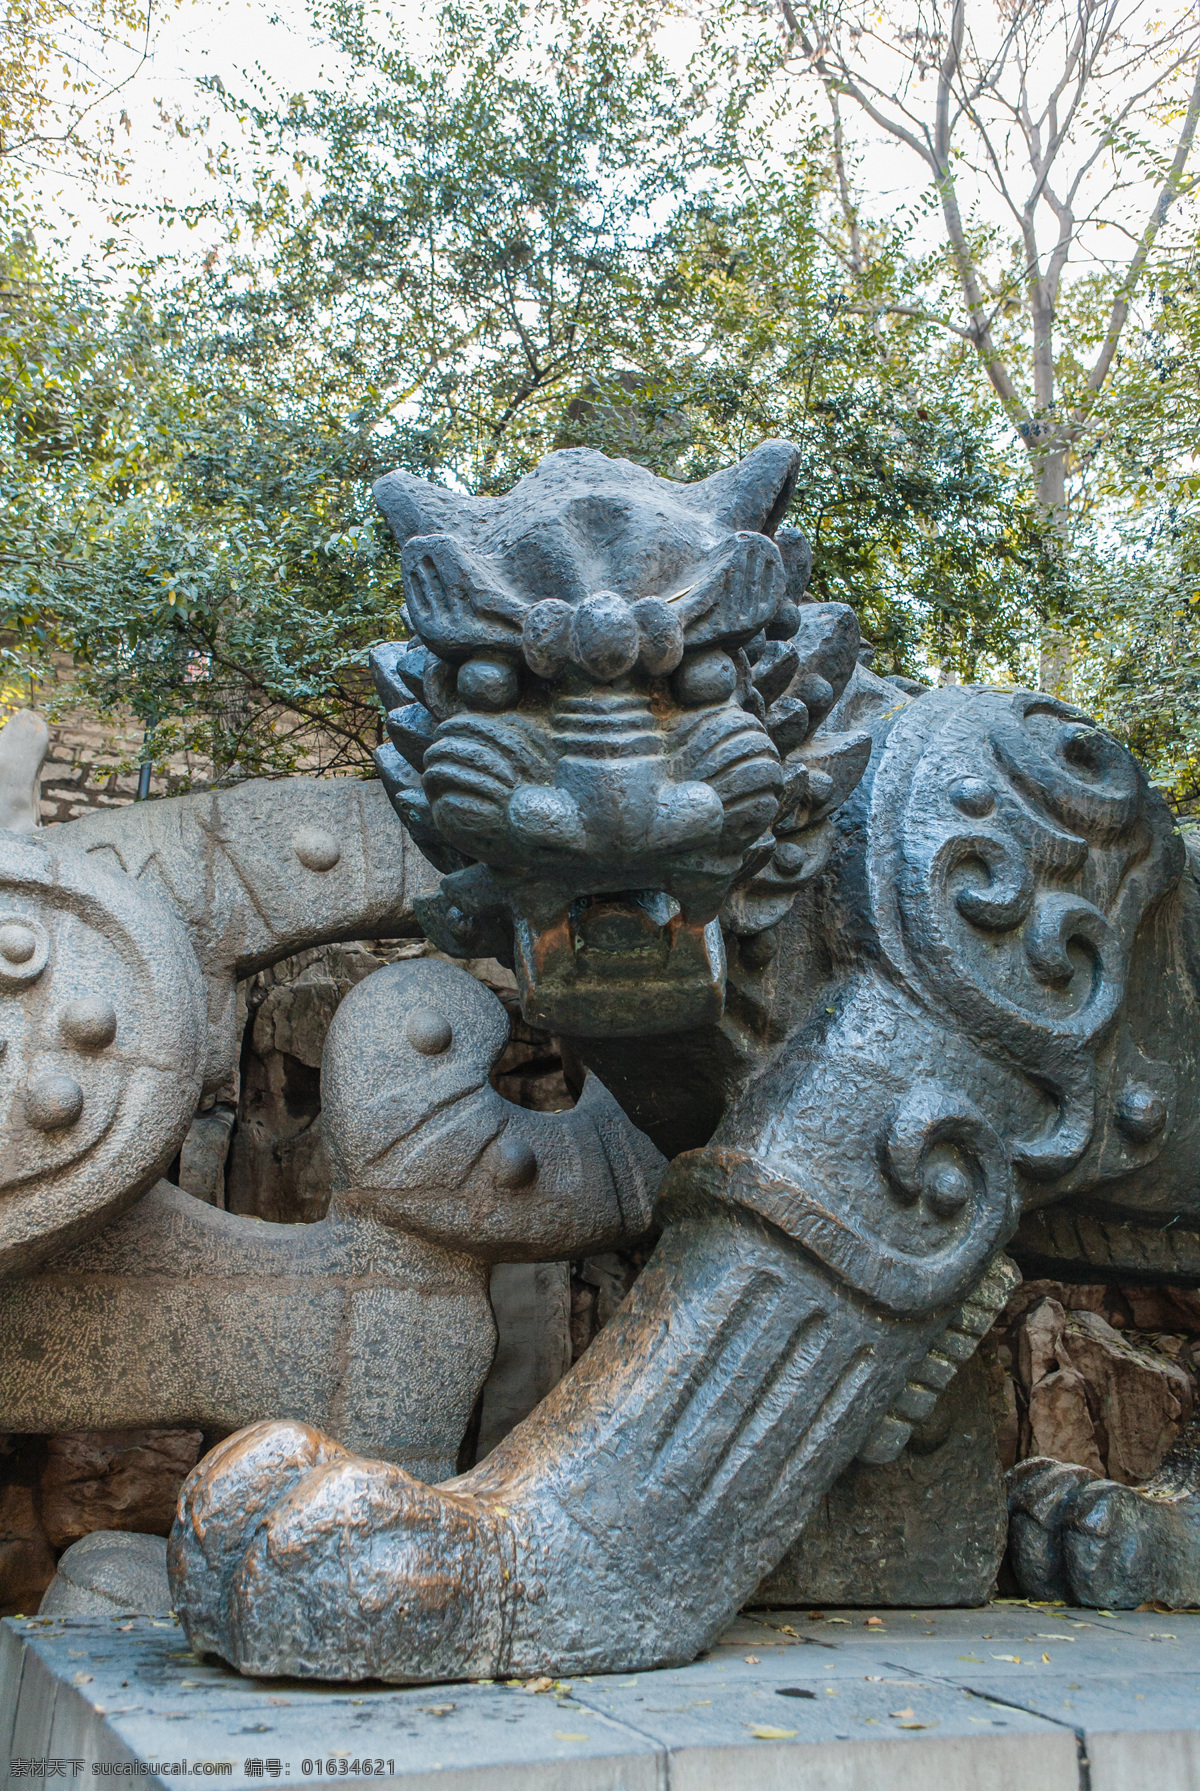 黑虎塑像 泉城 济南 黑虎泉 雕塑 绿树 济南印象 国内旅游 旅游摄影